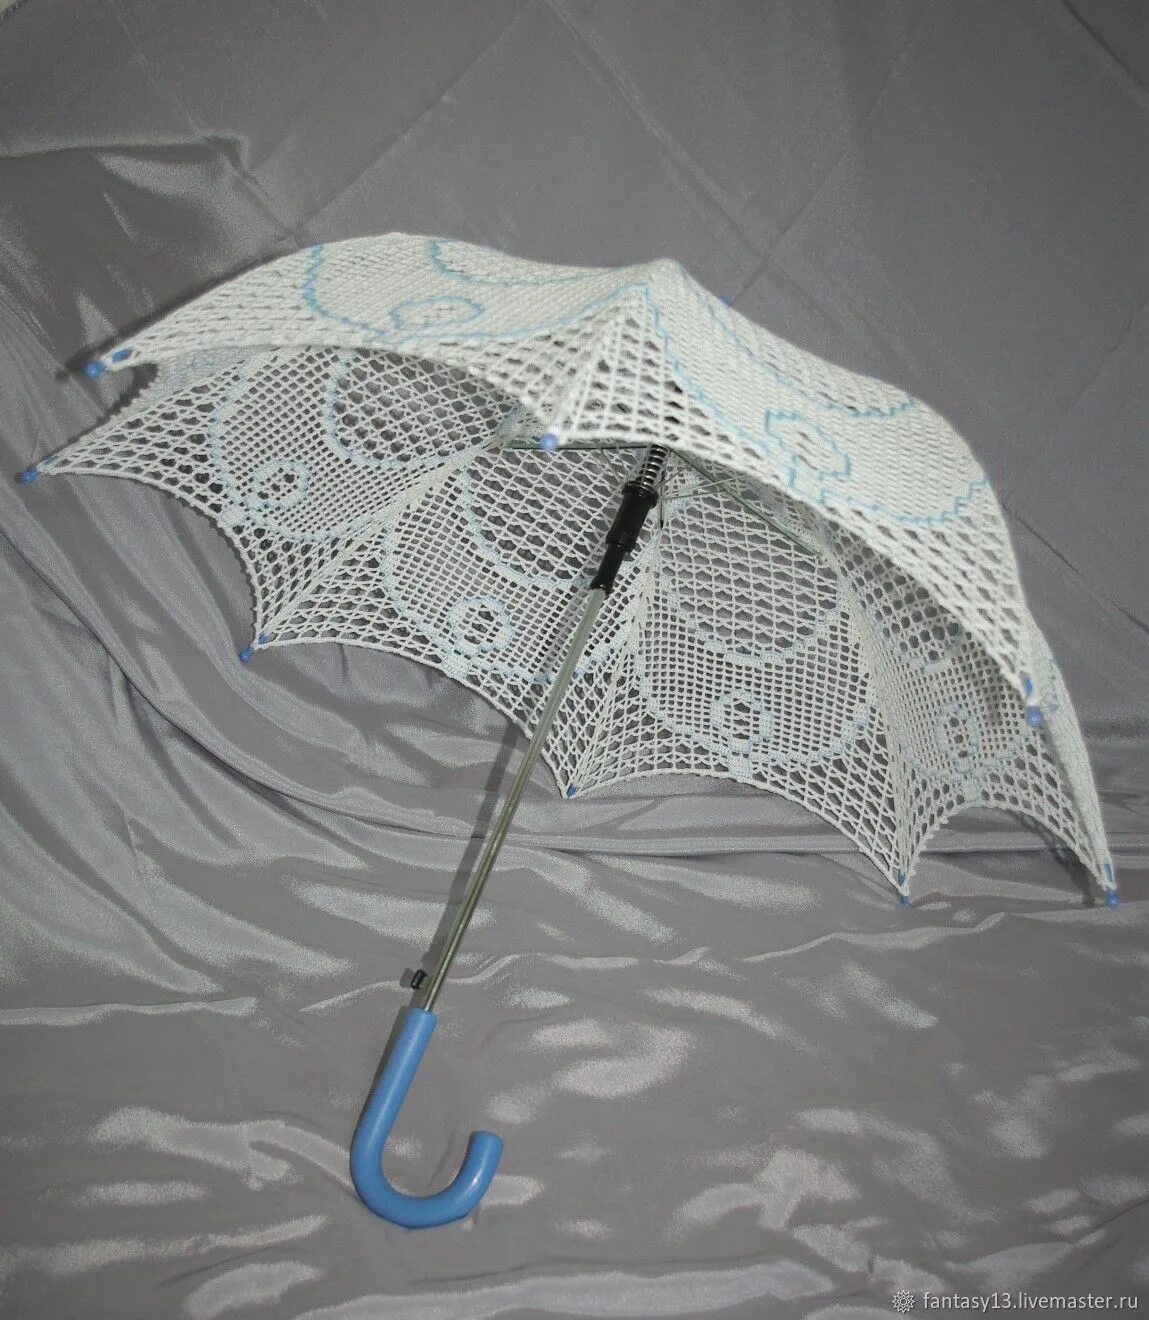 Зонт от солнца кружевной. Зонт кружево белый d65см HS-10. Ажурный зонт от солнца. Кружевной зонт. Зонтик от солнца женский.